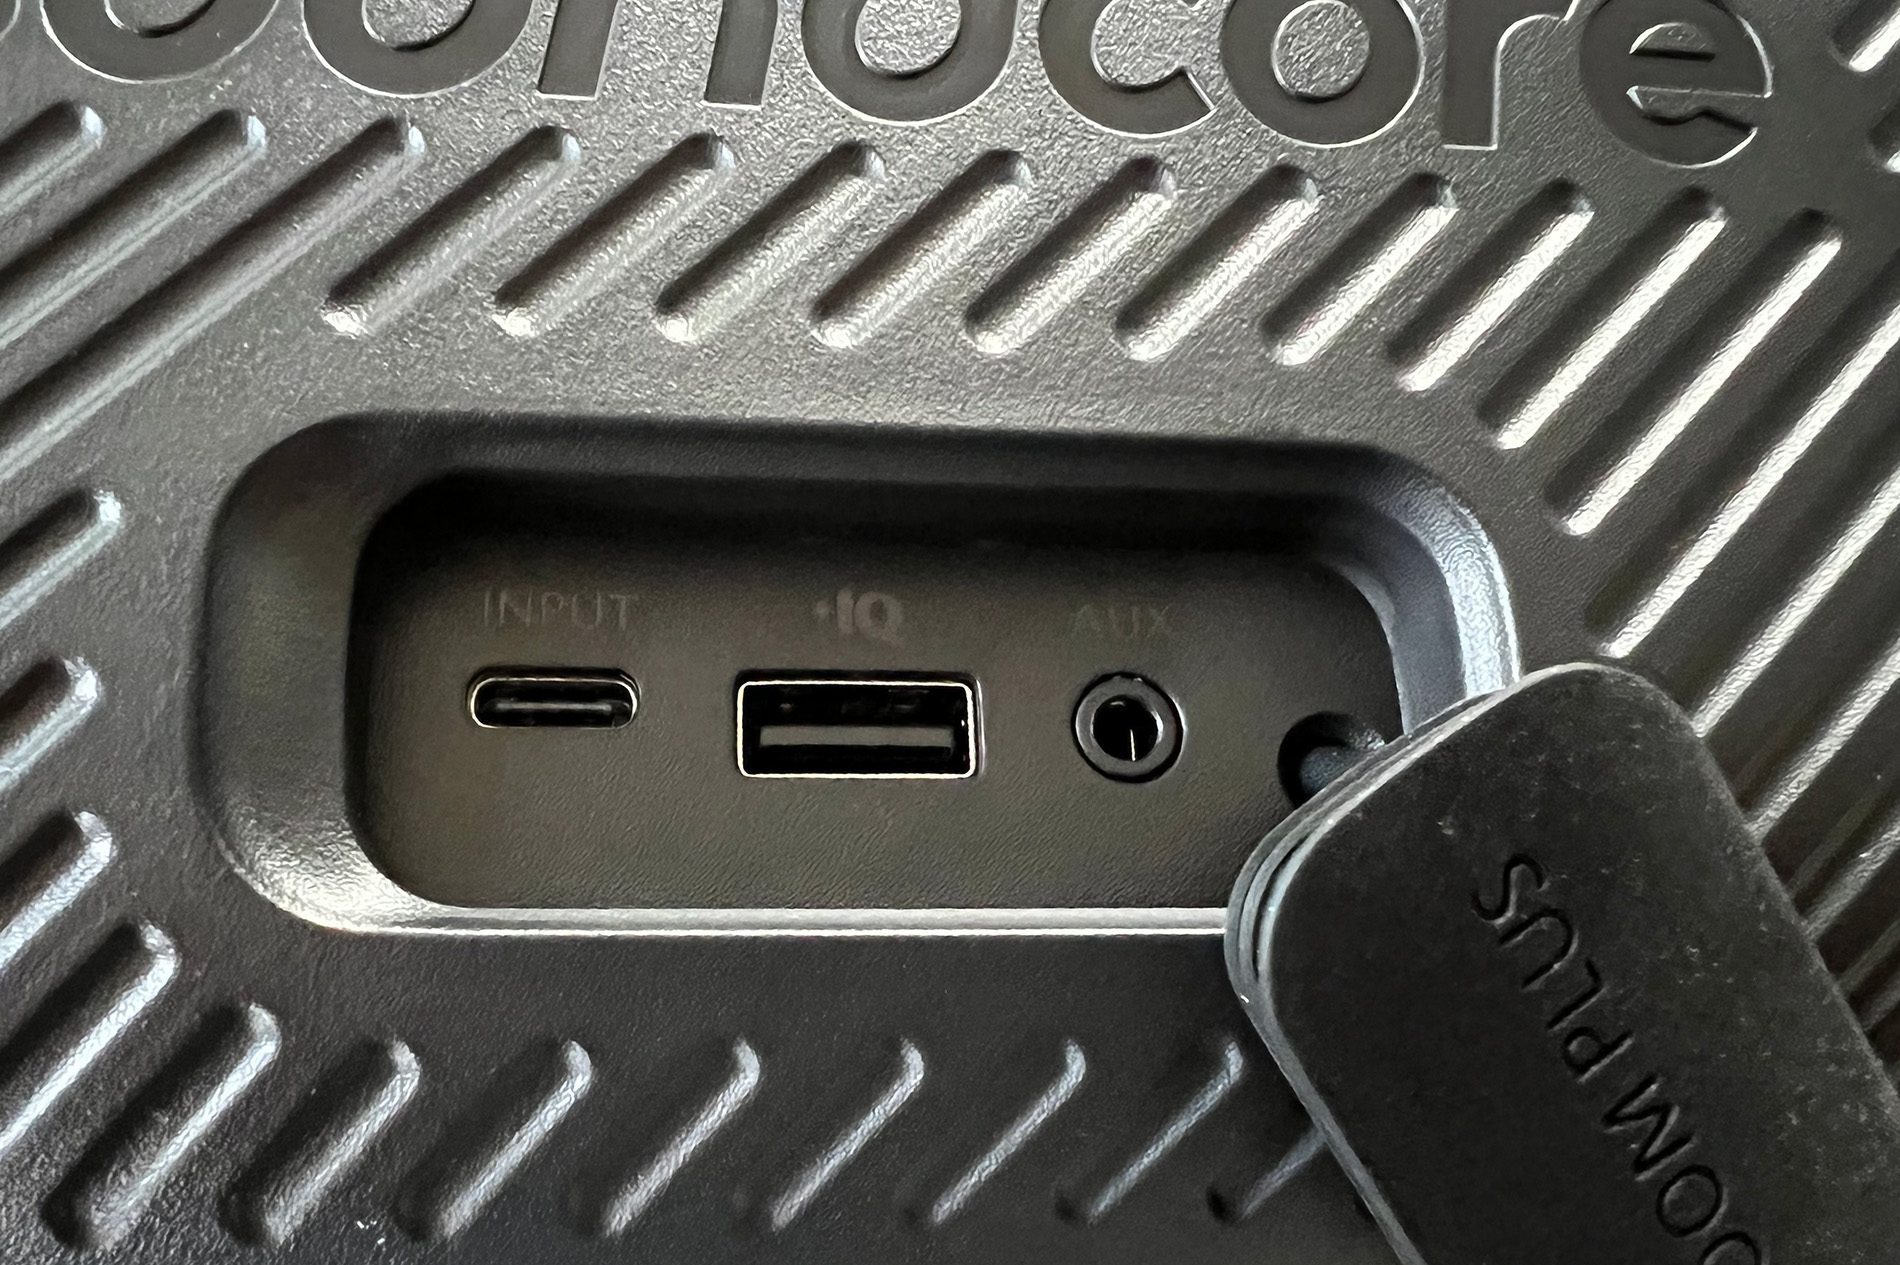 Hier sieht man die Anschlüsse des Soundcore Motion Boom Plus: USB-C zum Aufladen, USB-A zur Nutzung als Powerbank und ein Klinkenanschluß.